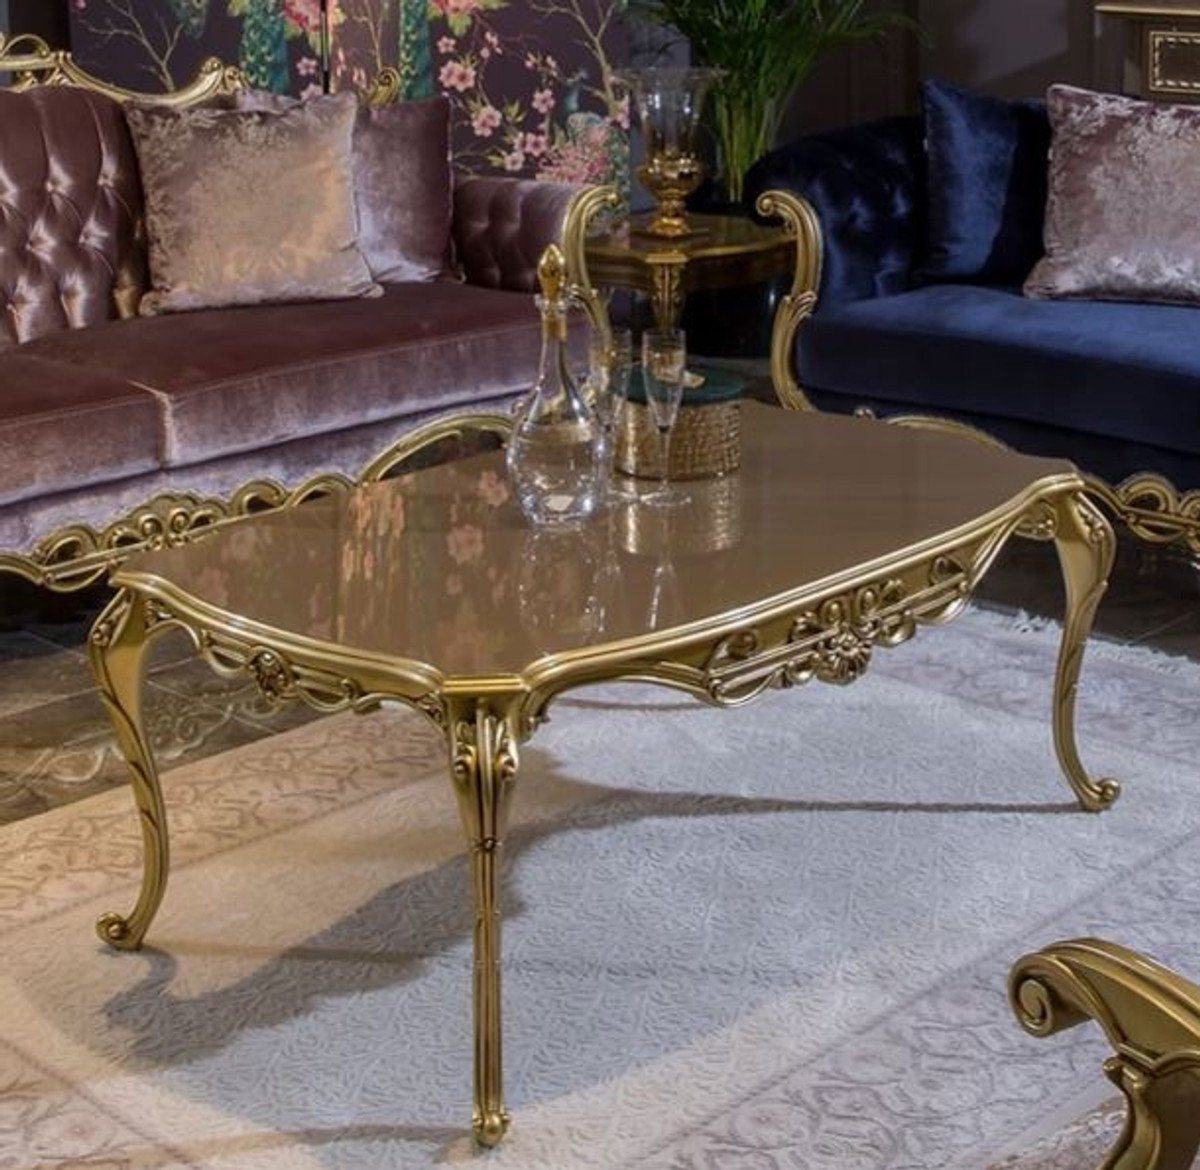 Casa Padrino Couchtisch Luxus Barock Couchtisch Grau / Gold 123 x 77 x H. 52 cm - Edler Massivholz Wohnzimmertisch im Barockstil - Prunkvolle Barock Möbel